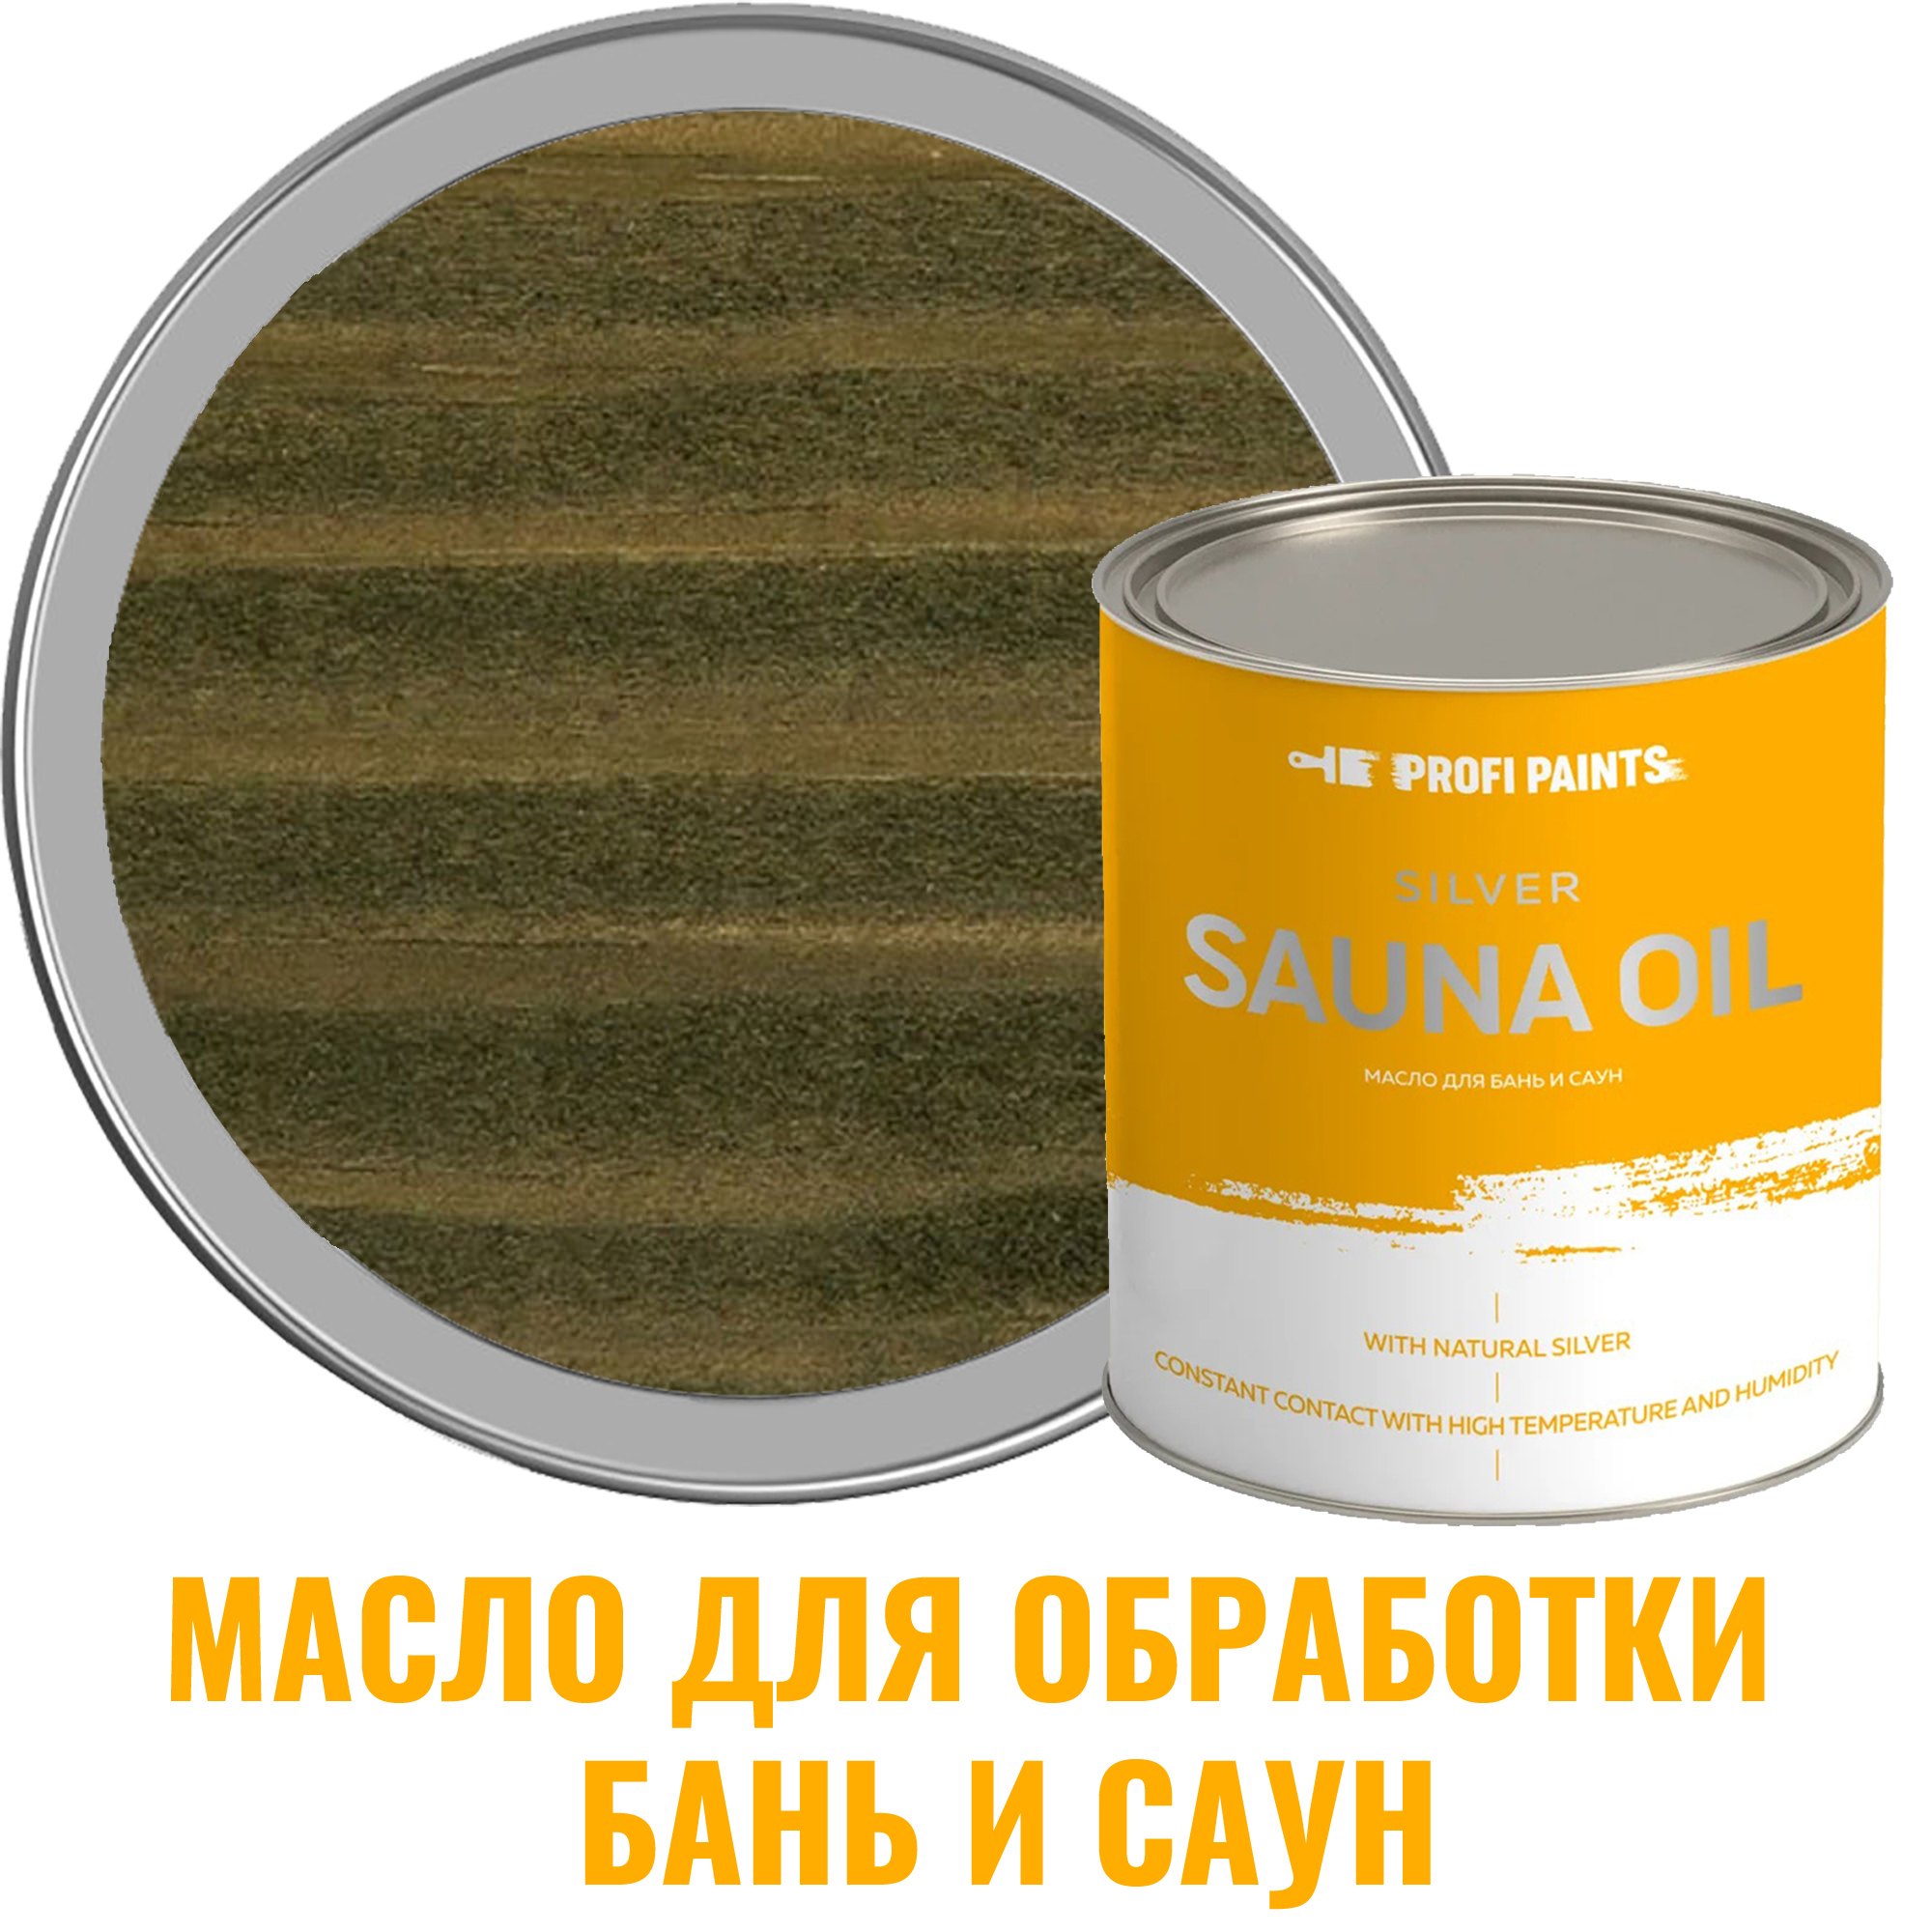 91095375 Масло для бань и саун 10814_D Silver Sauna Oil цвет оливковый 2.7 л STLM-0481735 PROFIPAINTS